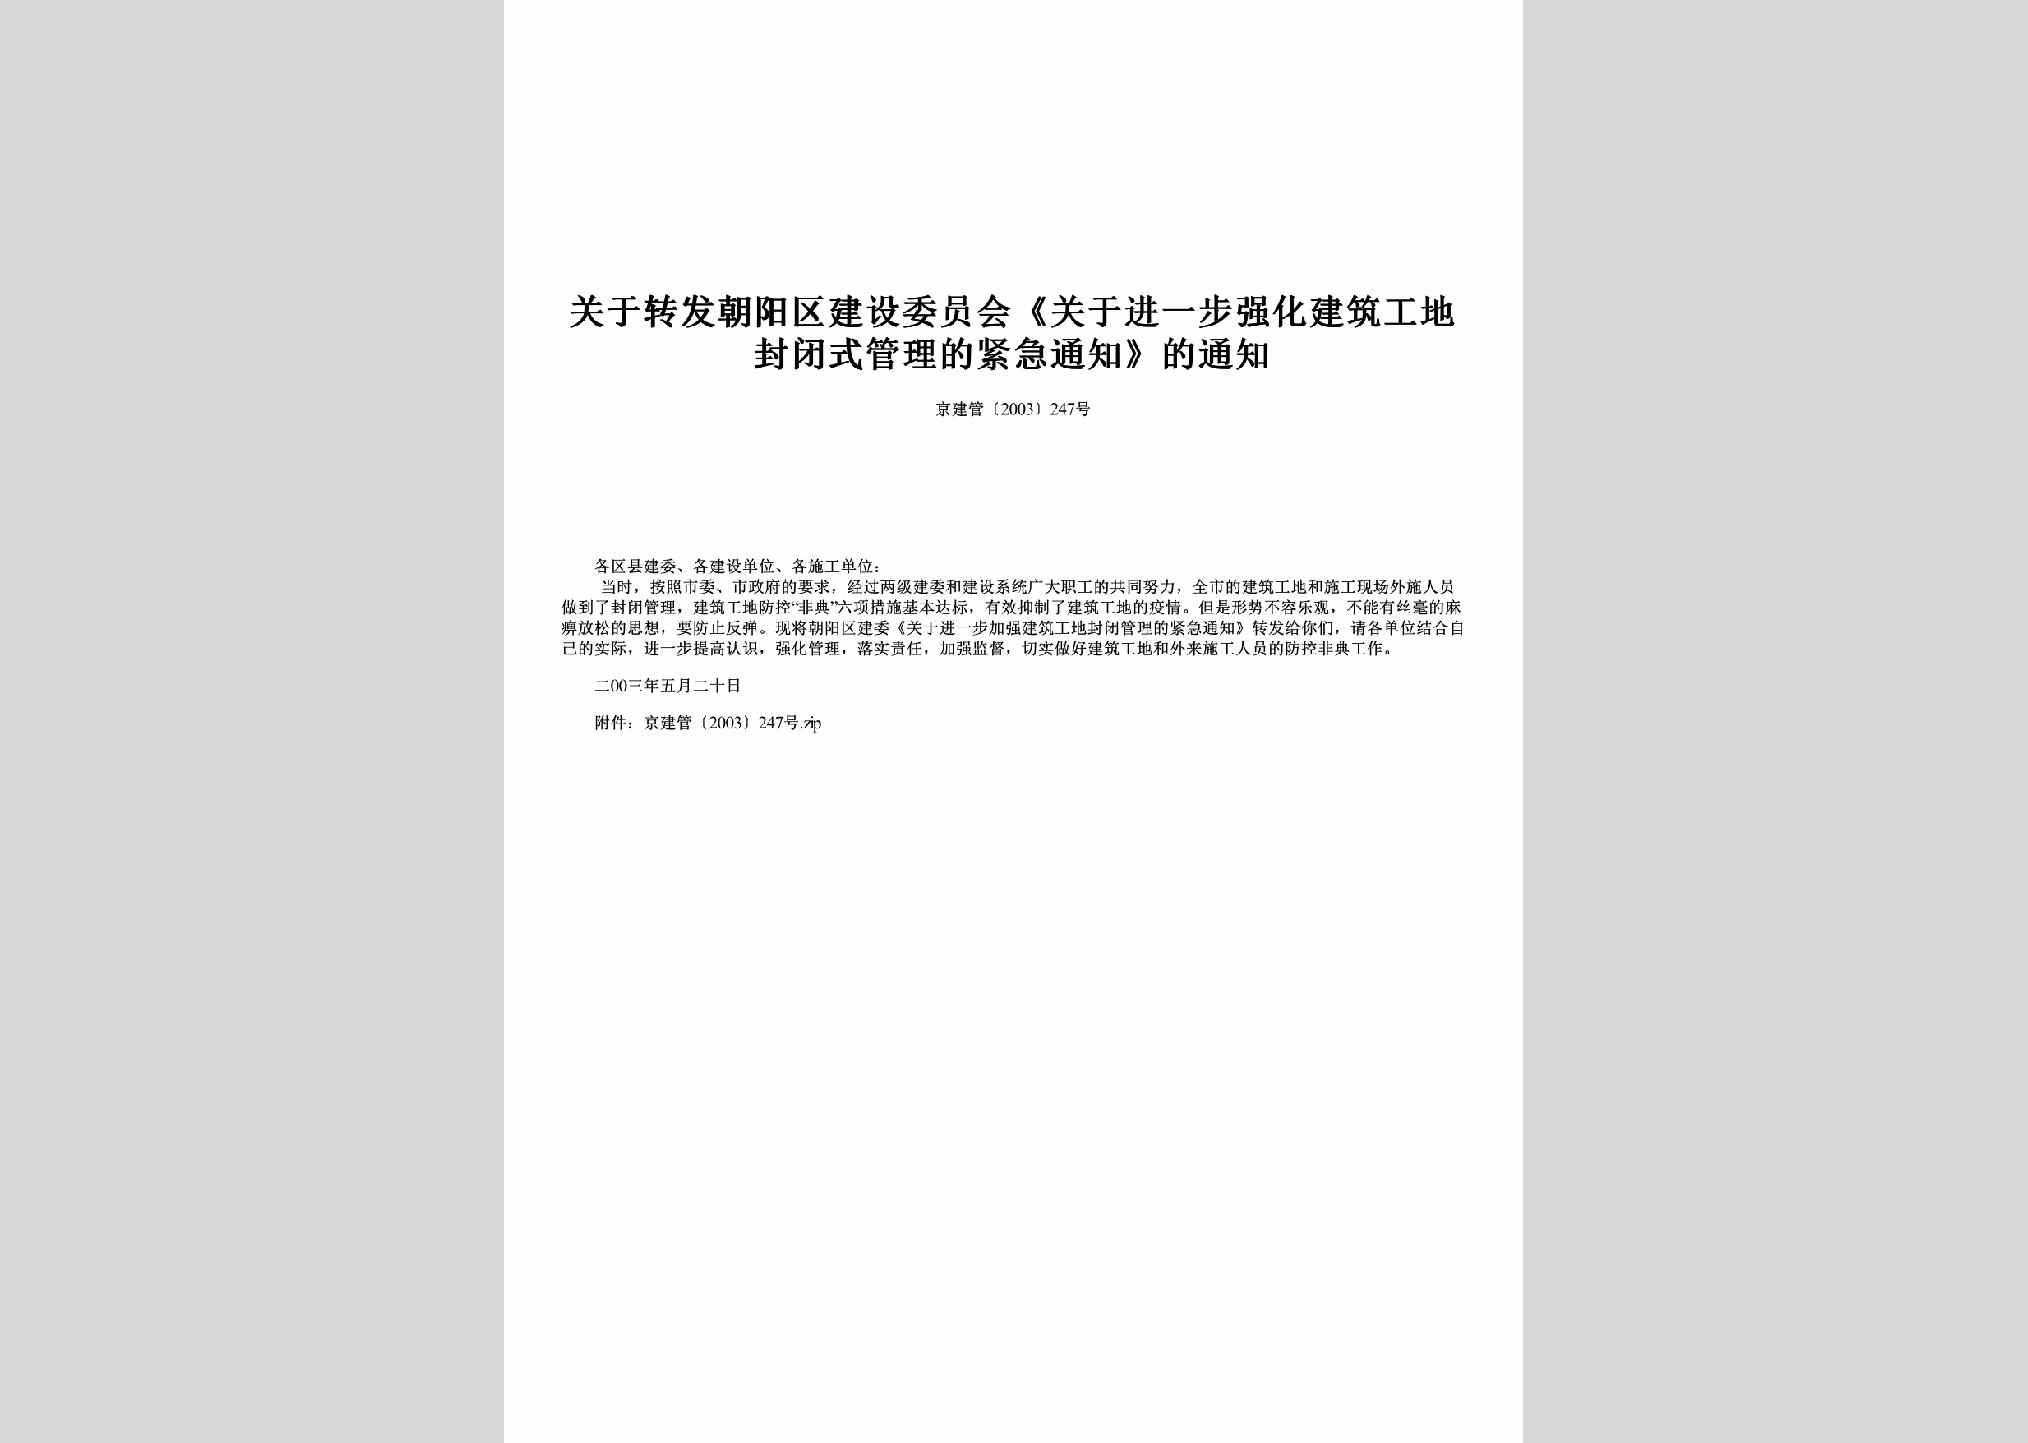 京建管[2003]247号：关于转发朝阳区建设委员会《关于进一步强化建筑工地封闭式管理的紧急通知》的通知